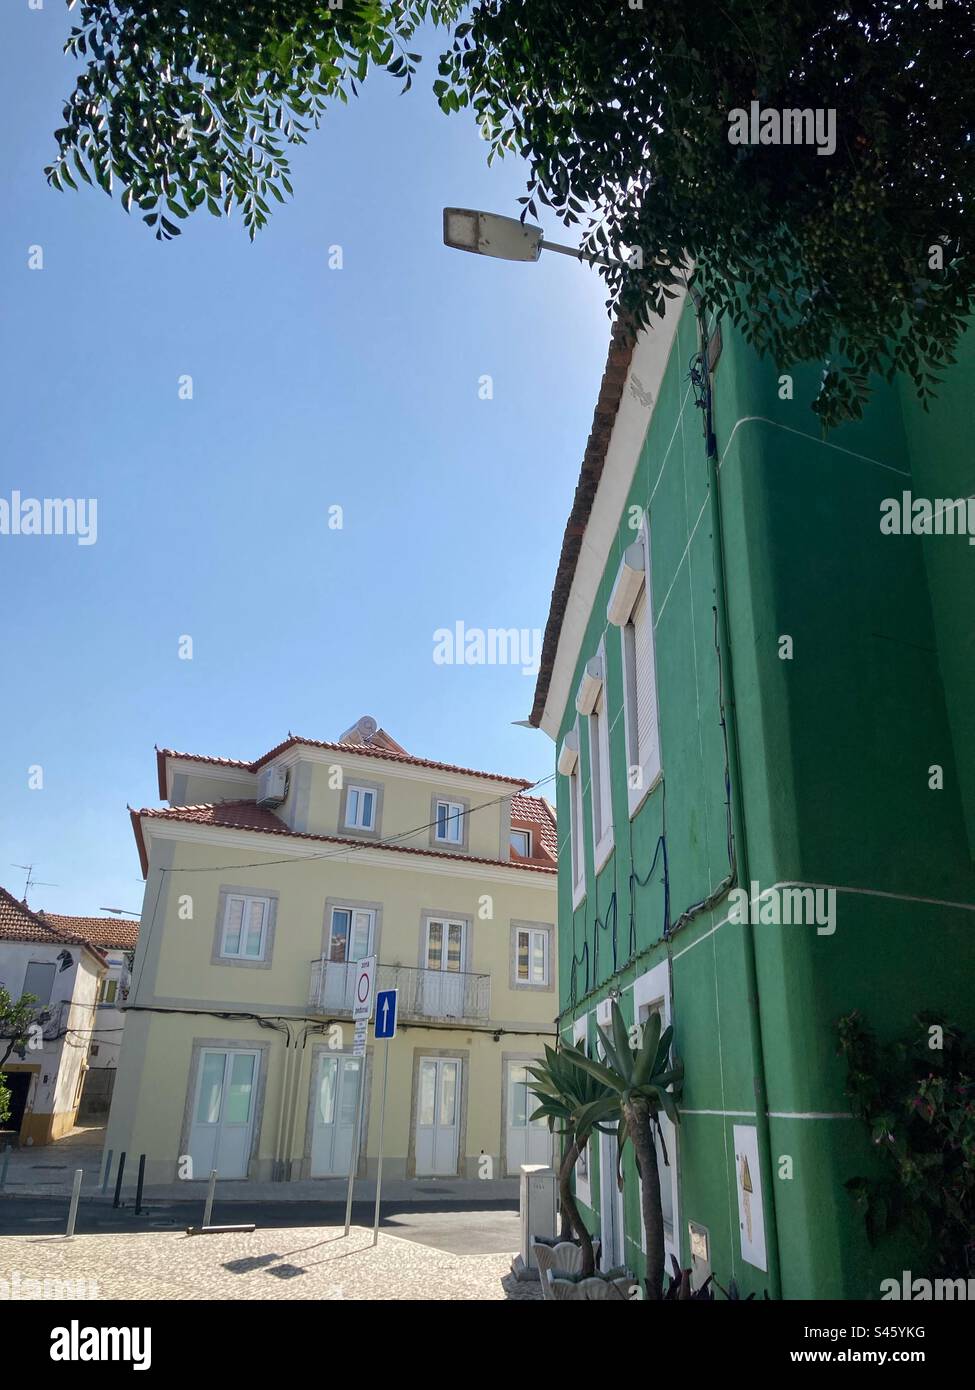 Maison verte et jaune dans le sud du Portugal, emplacement Moita. Architecture et design typiques. Banque D'Images